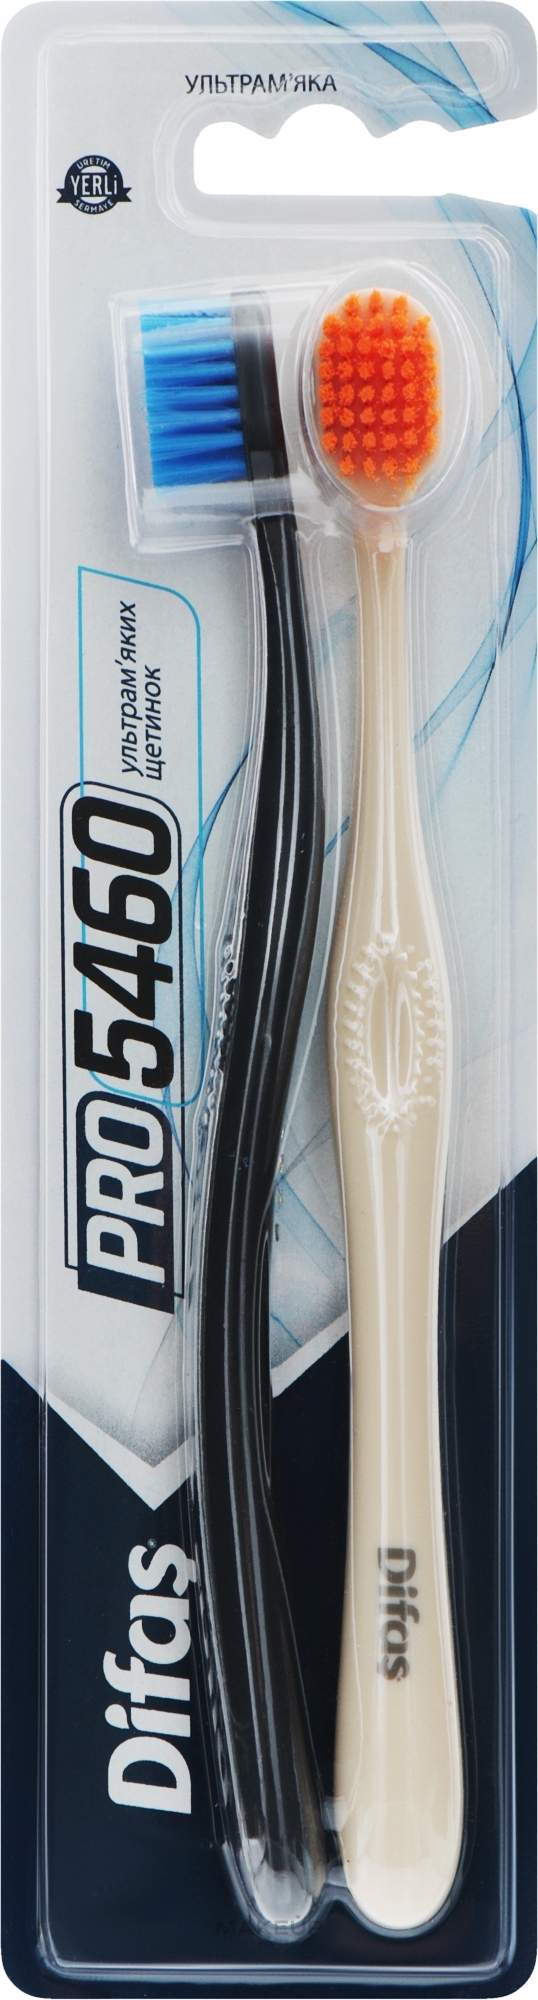 Набір зубних щіток "Ultra Soft", чорна +бежева - Difas PRO 5460 — фото 2шт